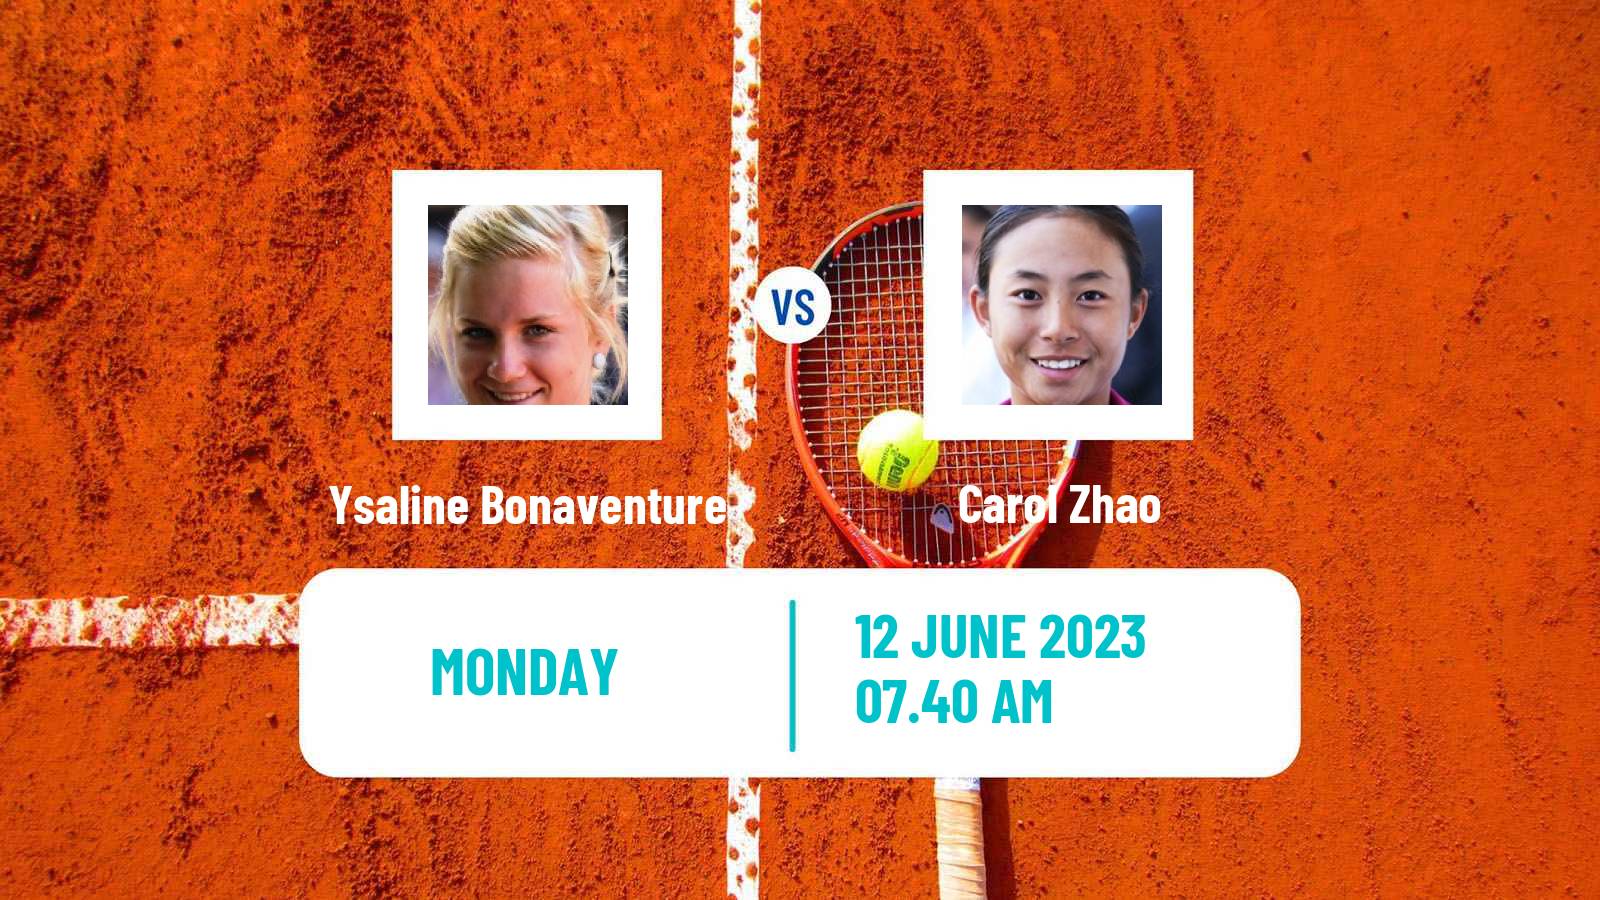 Tennis WTA Hertogenbosch Ysaline Bonaventure - Carol Zhao